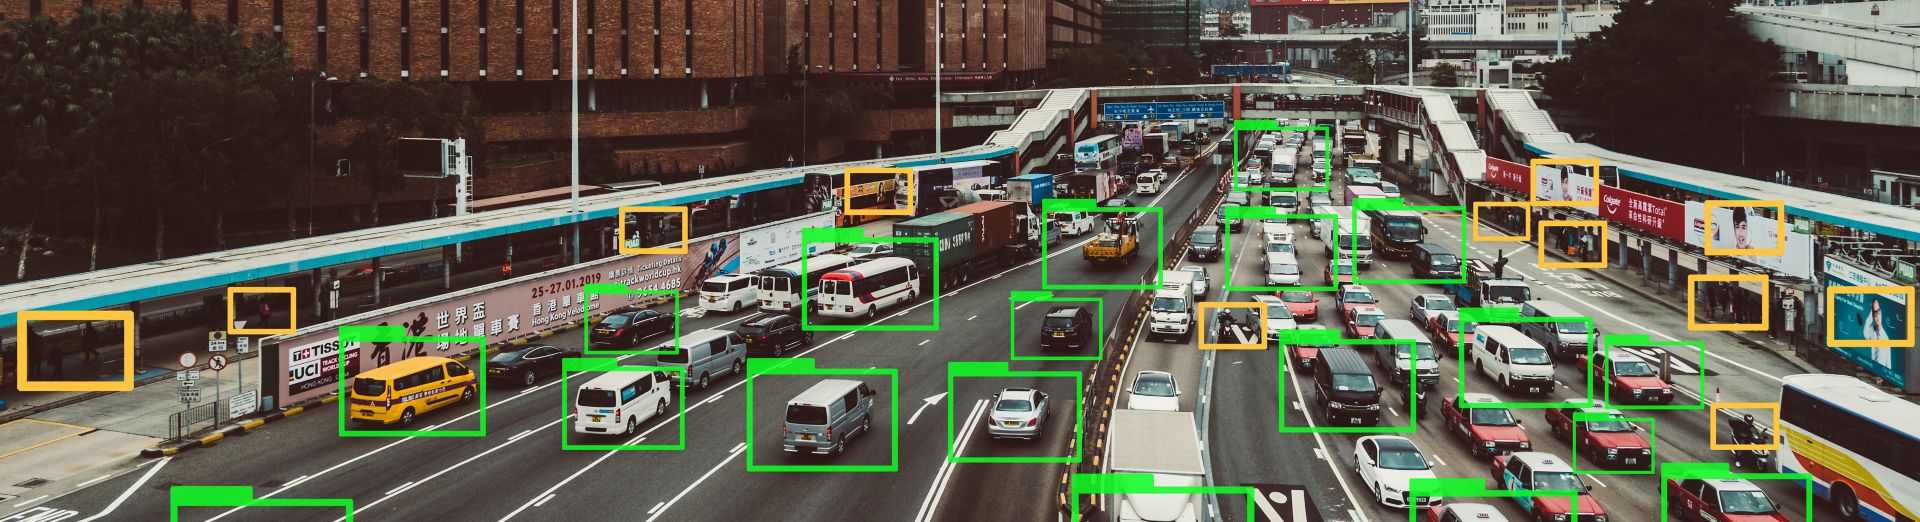 Tecnología de machine learning rastreando automóviles en una autopista